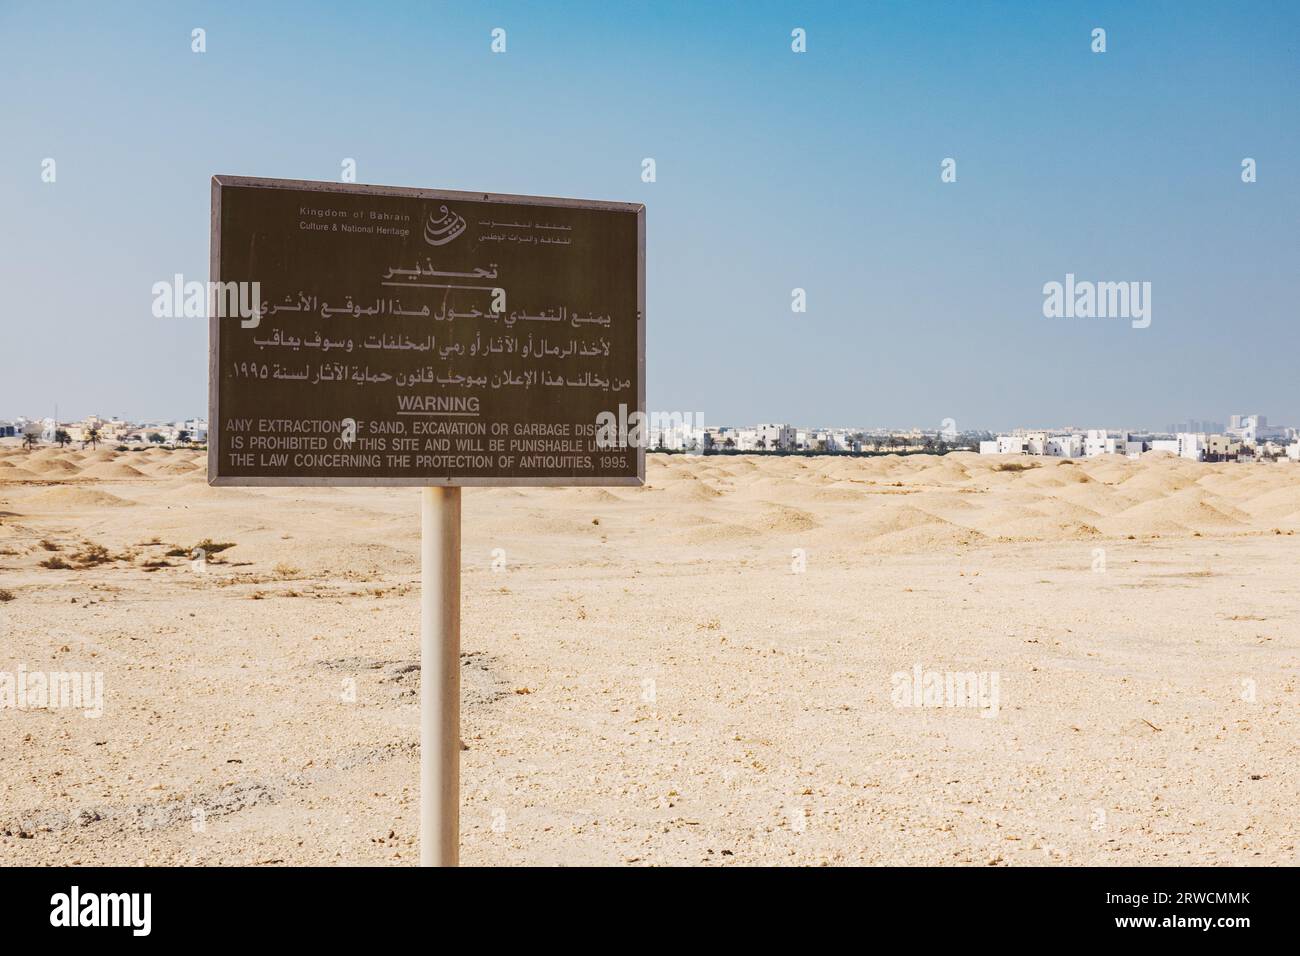 Ein Schild, das die Ausgrabung oder den Eingriff einiger Dilmun-Grabhügel verbietet, eine Reihe von UNESCO-Weltkulturerbestätten in ganz Bahrain, die auf 2200 v. Chr. datiert wurden Stockfoto